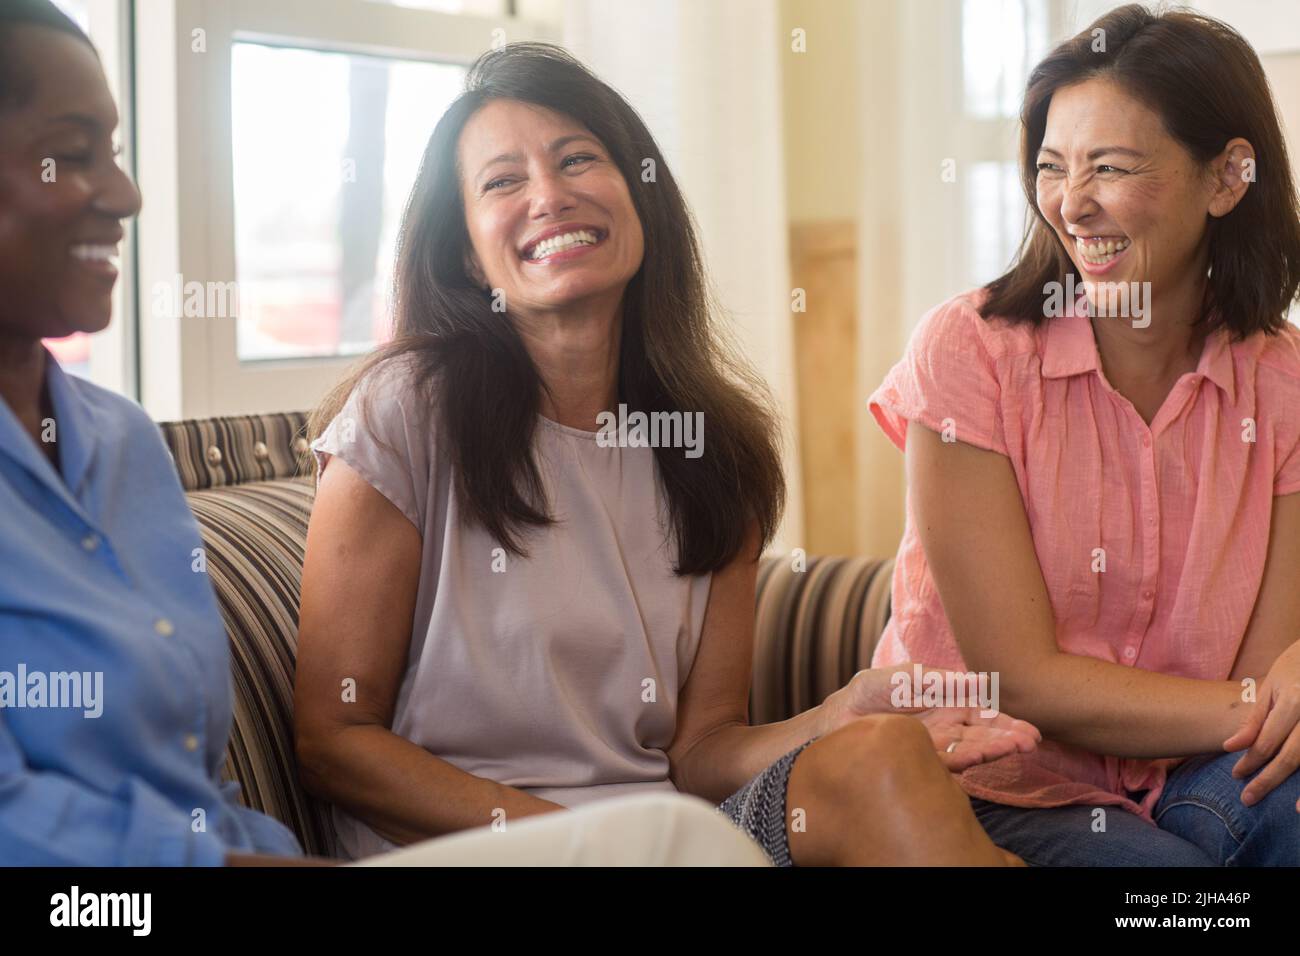 Un grupo de mujeres se ríe y habla en casa. Foto de stock